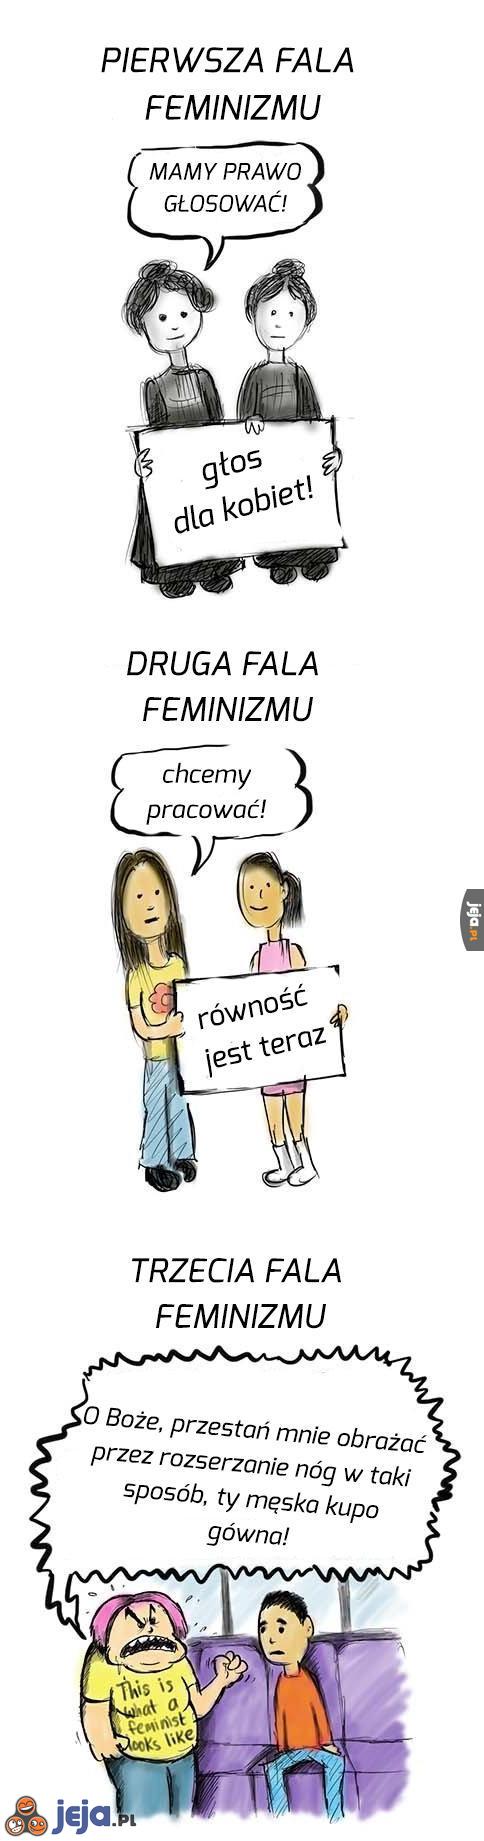 3 fale feminizmu